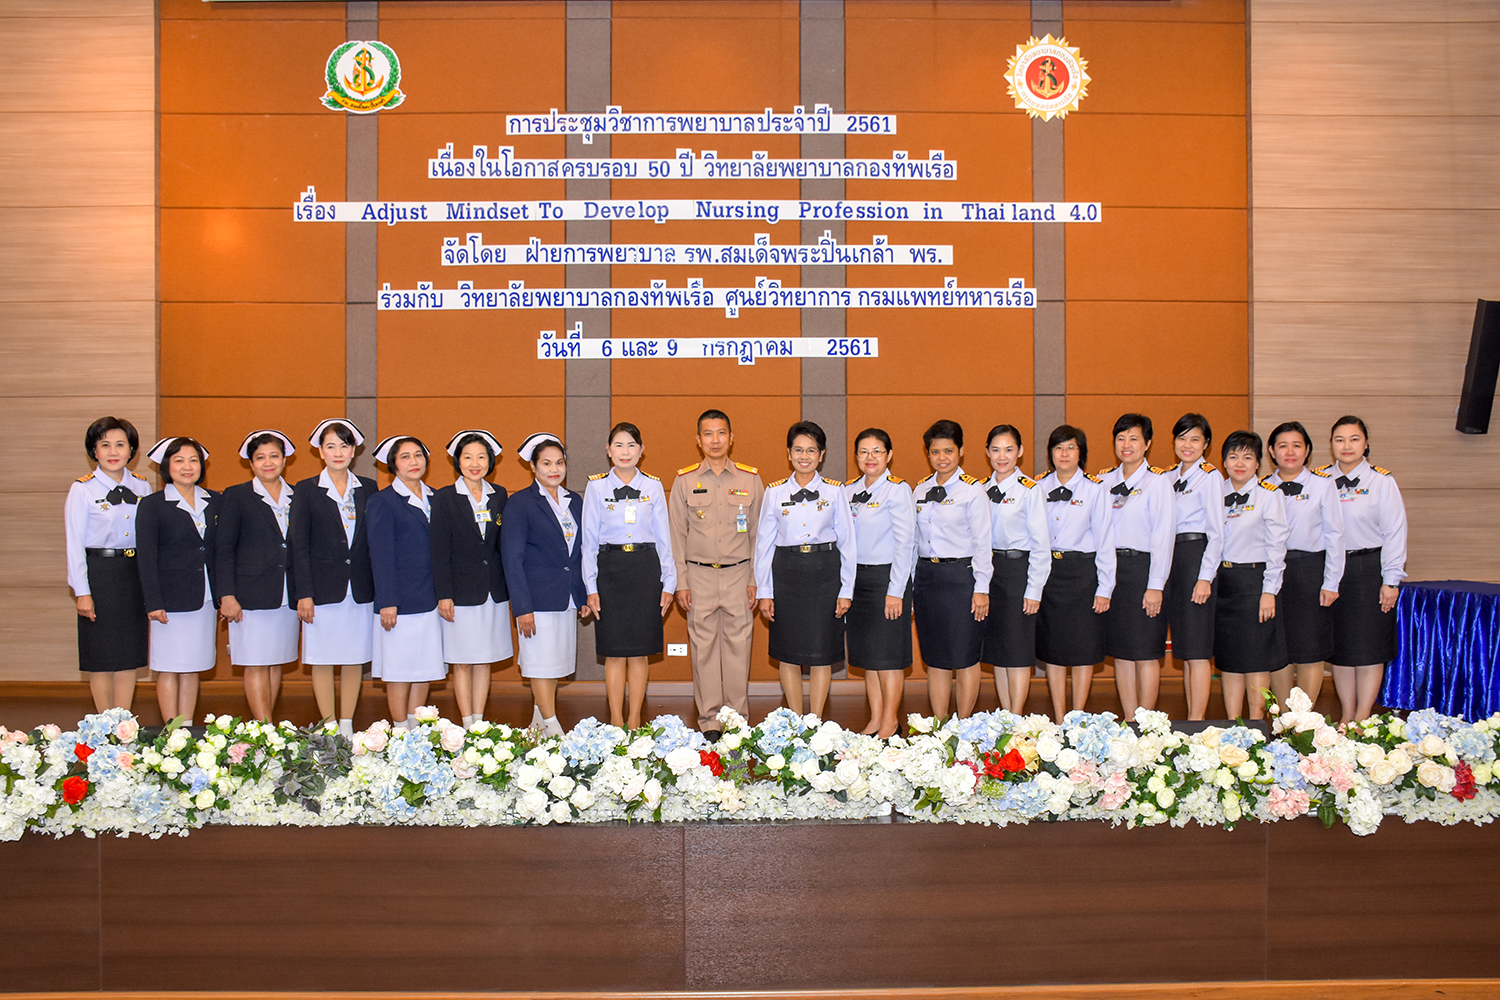 การประชุมวิชาการพยาบาลประจำปี 2561 เรื่อง " Adjust Mindset To Develop Nursing Profession in Thailand 4.0 "